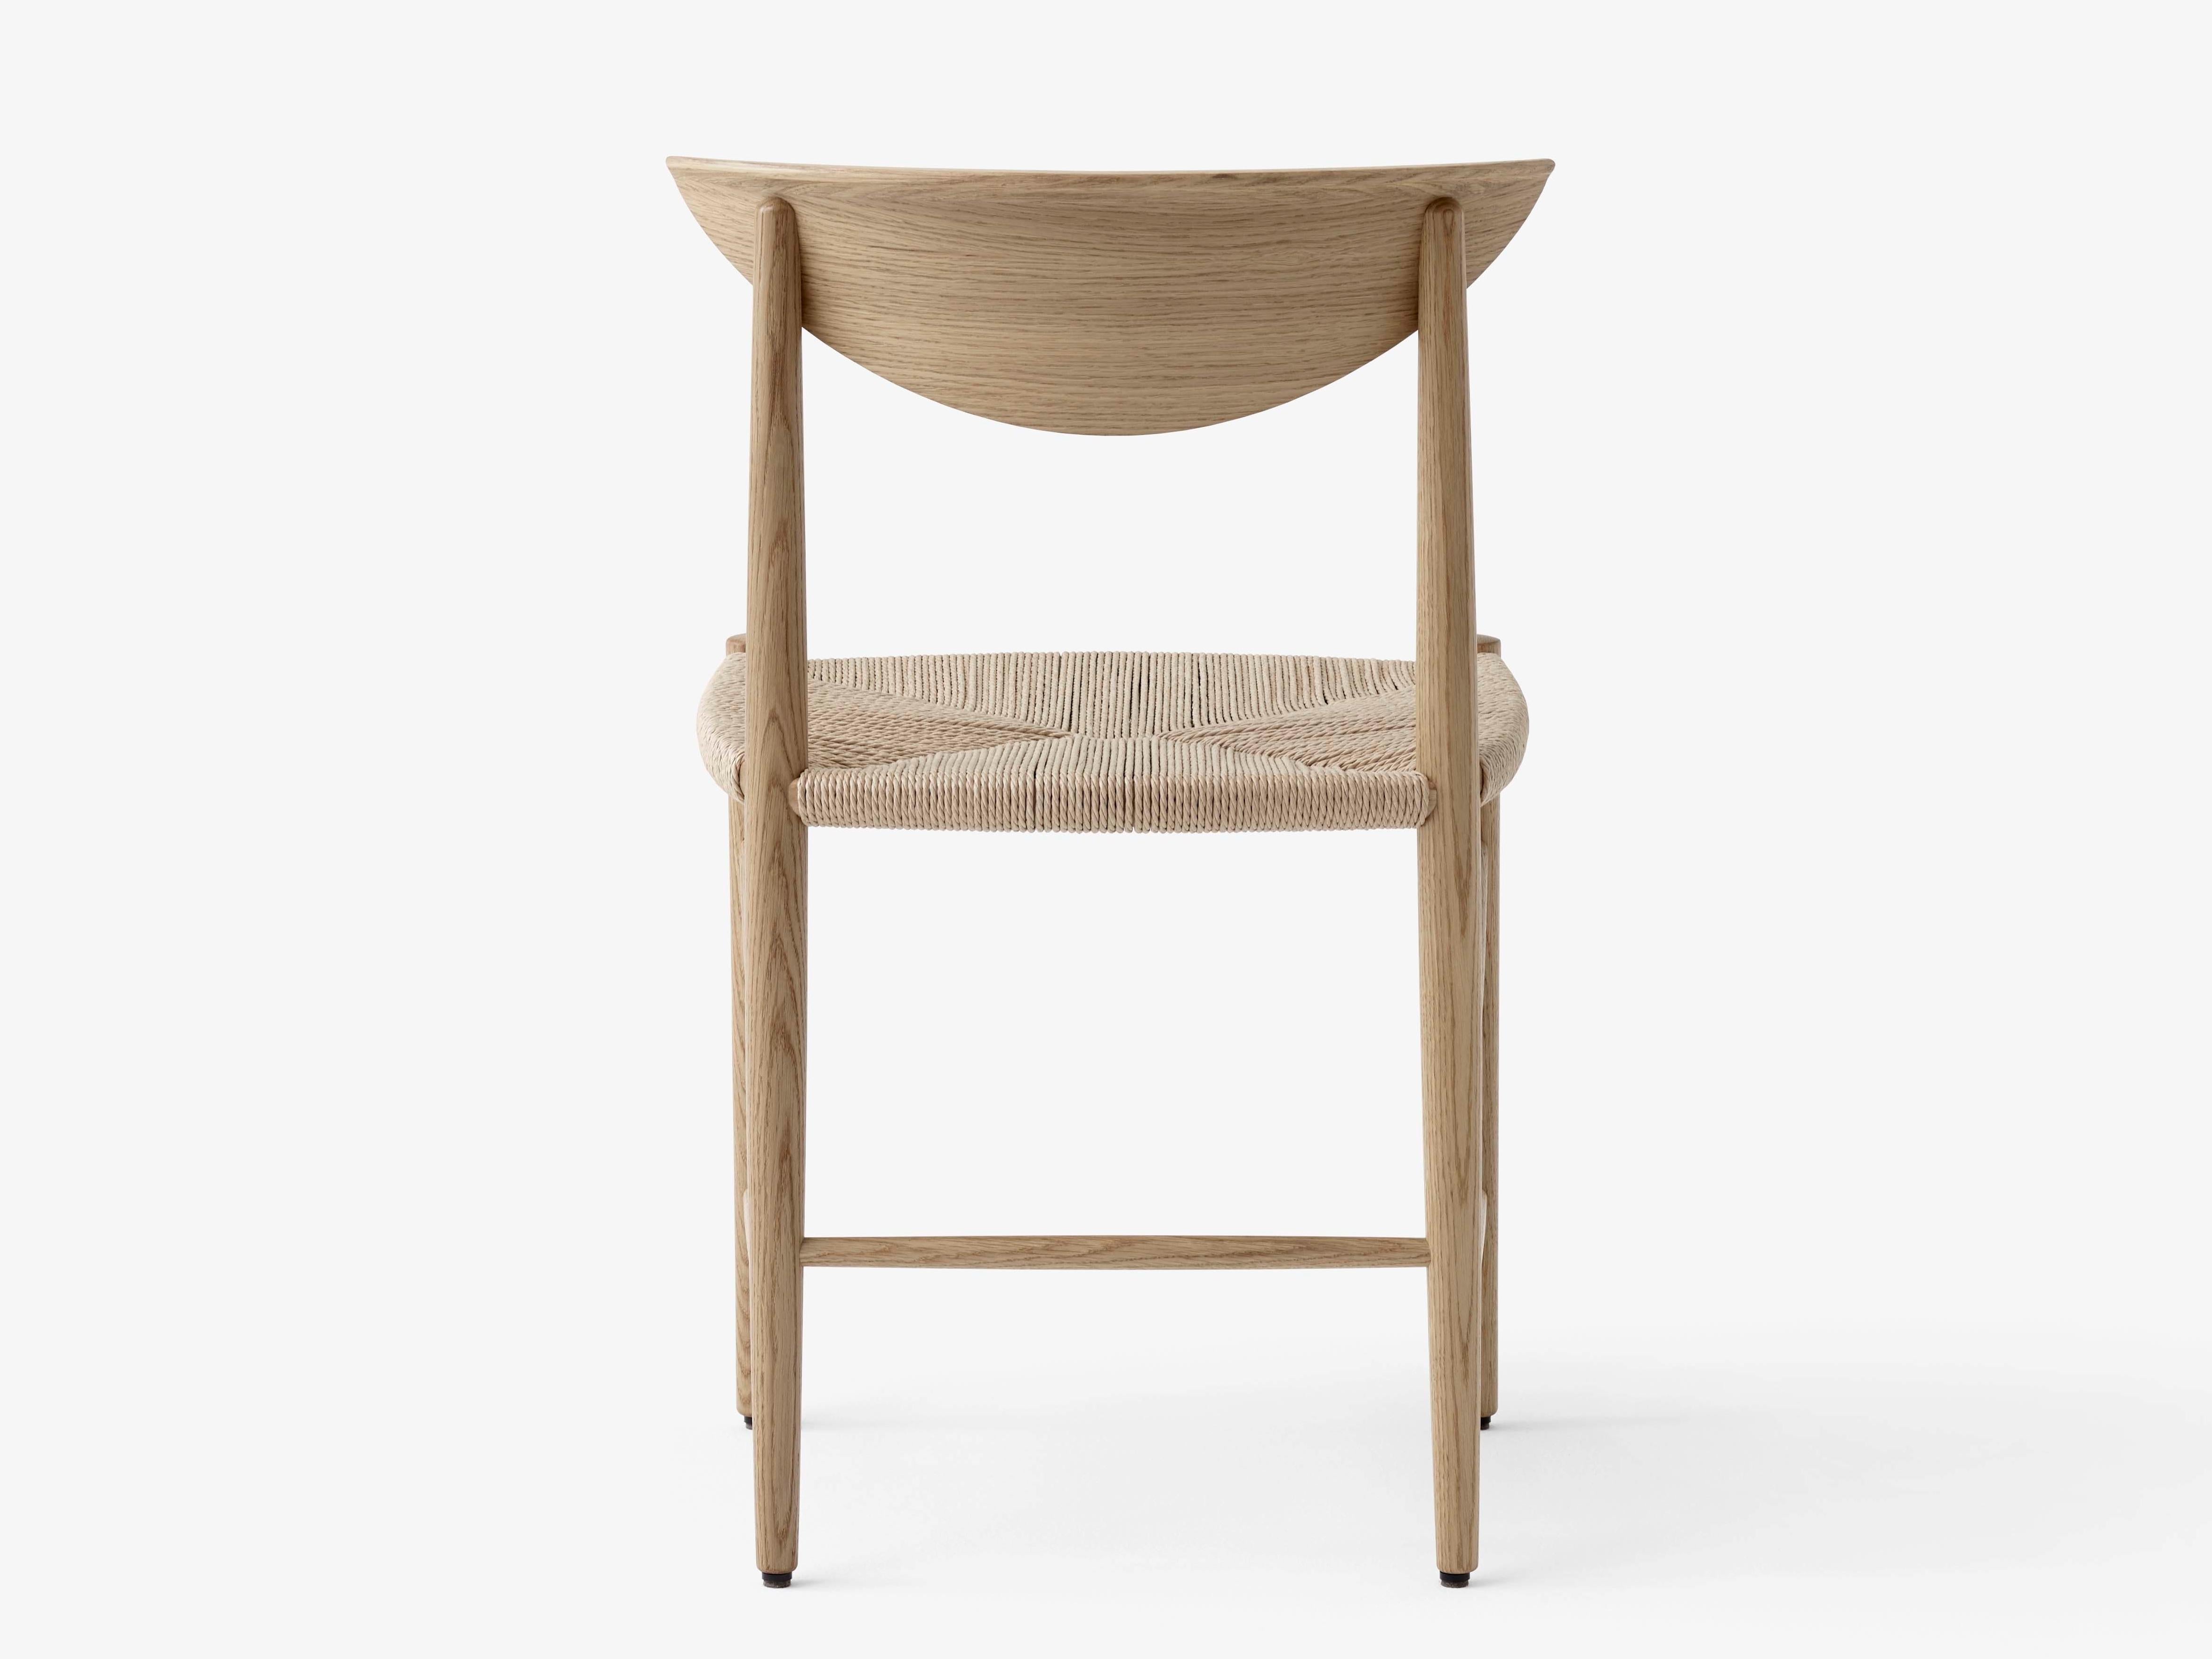 Chaise dessinée modèle 316 par Hvidt et Mølgaard. Nouvelle édition. La chaise modèle 316 de Hvidt & Mølgaard se distingue comme une pièce définitive du design danois. S'appuyant sur des techniques artisanales traditionnelles et construit à partir de